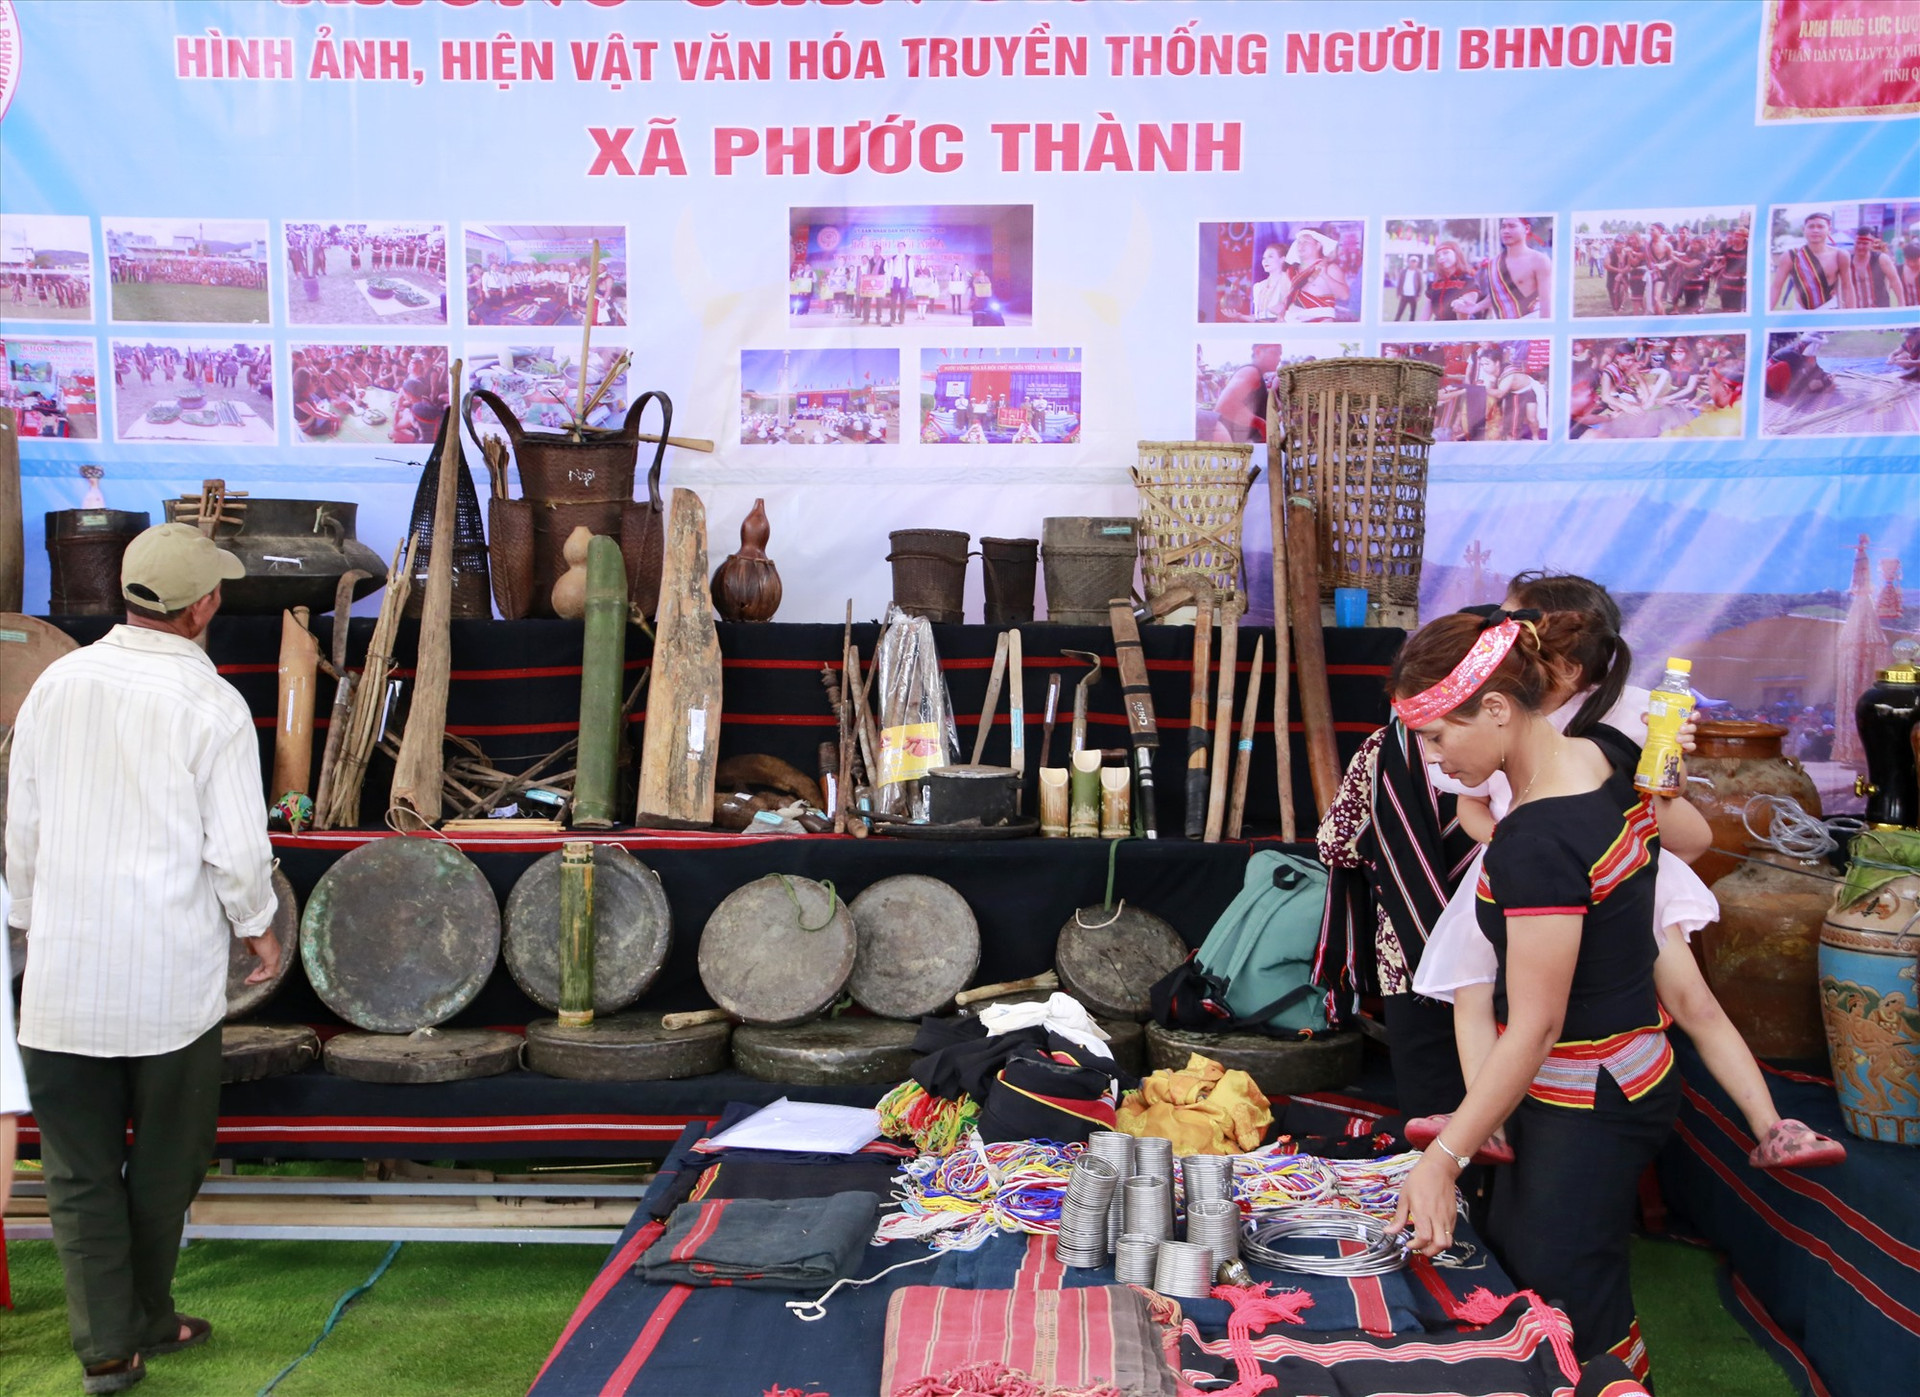 Người dân được xem nhiều sự kiện văn hóa và tham quan không gian trưng bày của các địa phương liên quan đời sống, văn hóa, sản xuất của đồng bào Bh’noong huyện Phước Sơn. Ảnh: C.N